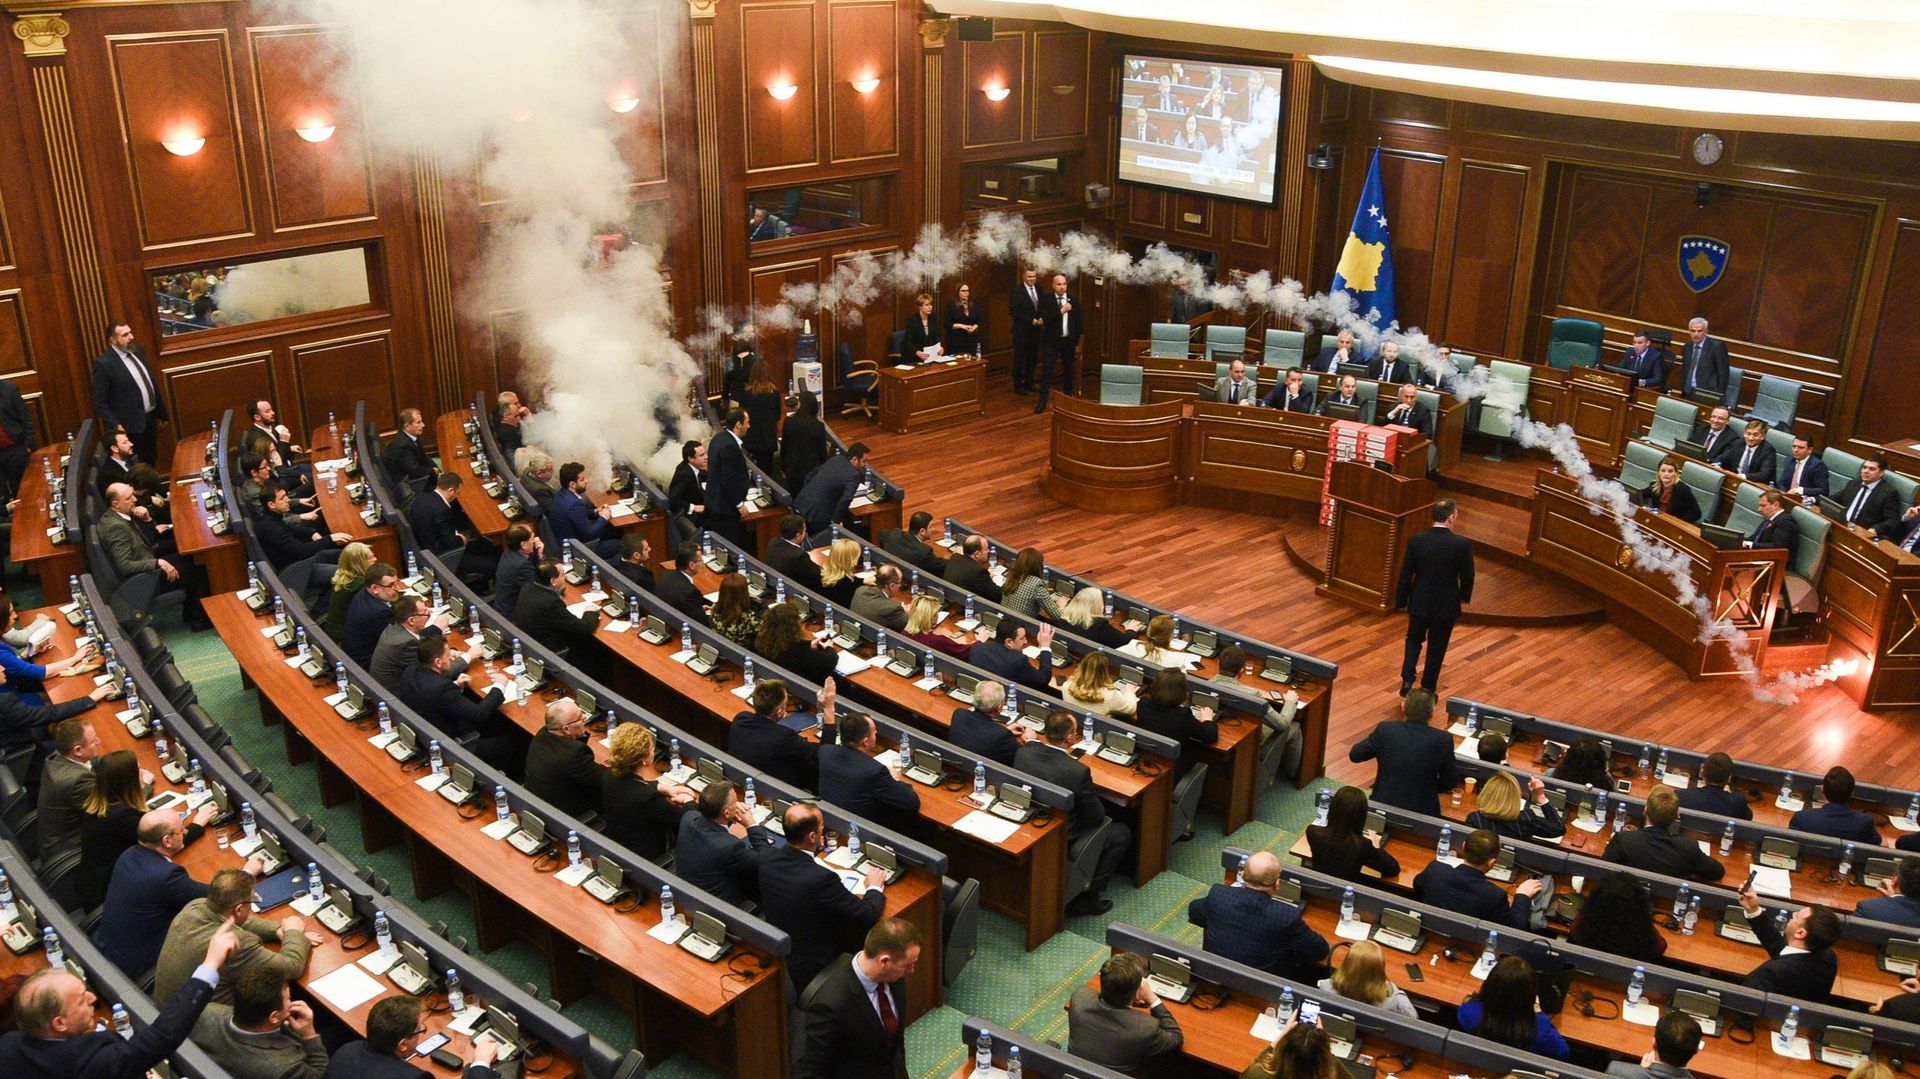 Le parti d'opposition de gauche nationaliste kosovar à l'origine de jets de gaz lacrymogènes au Parlement